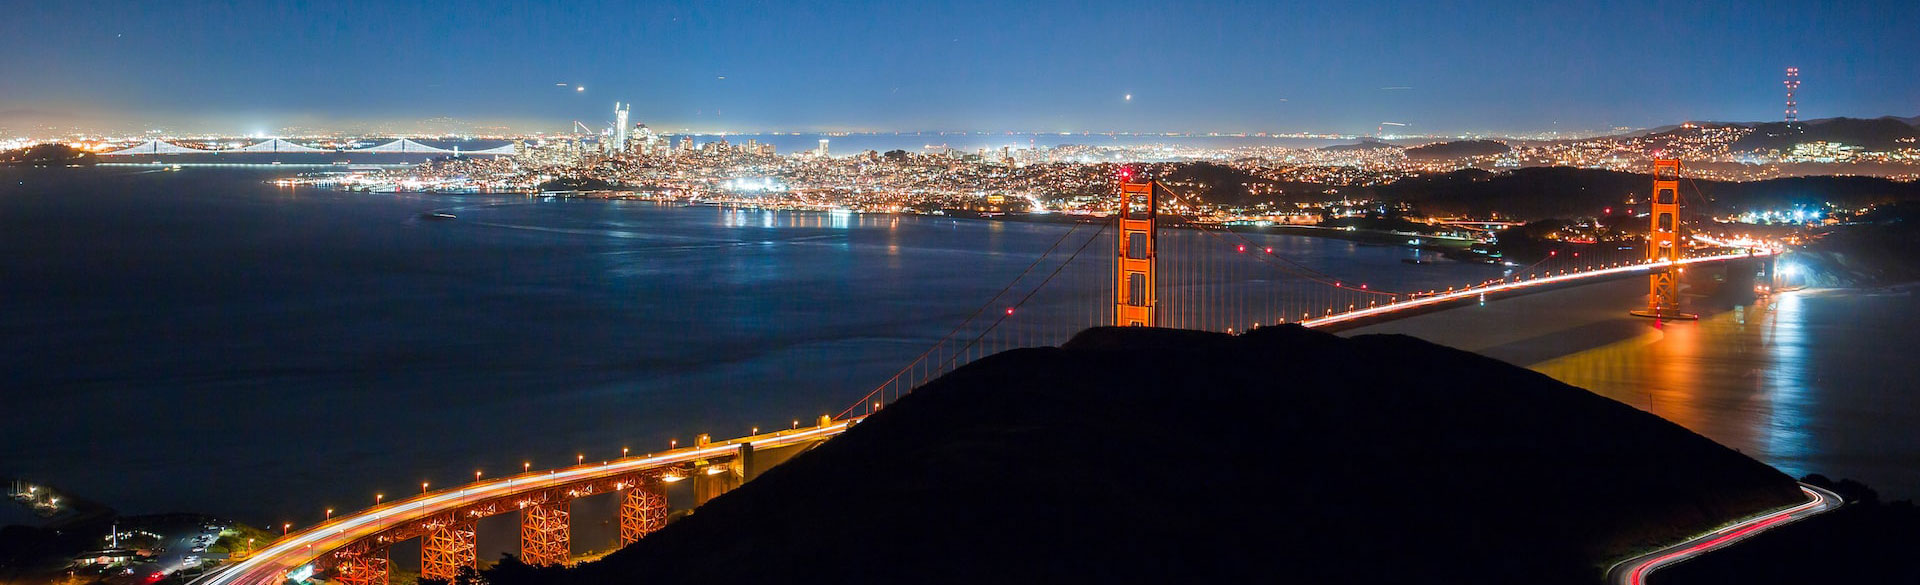 サンフランシスコ湾とゴールデンゲートブリッジの夜景